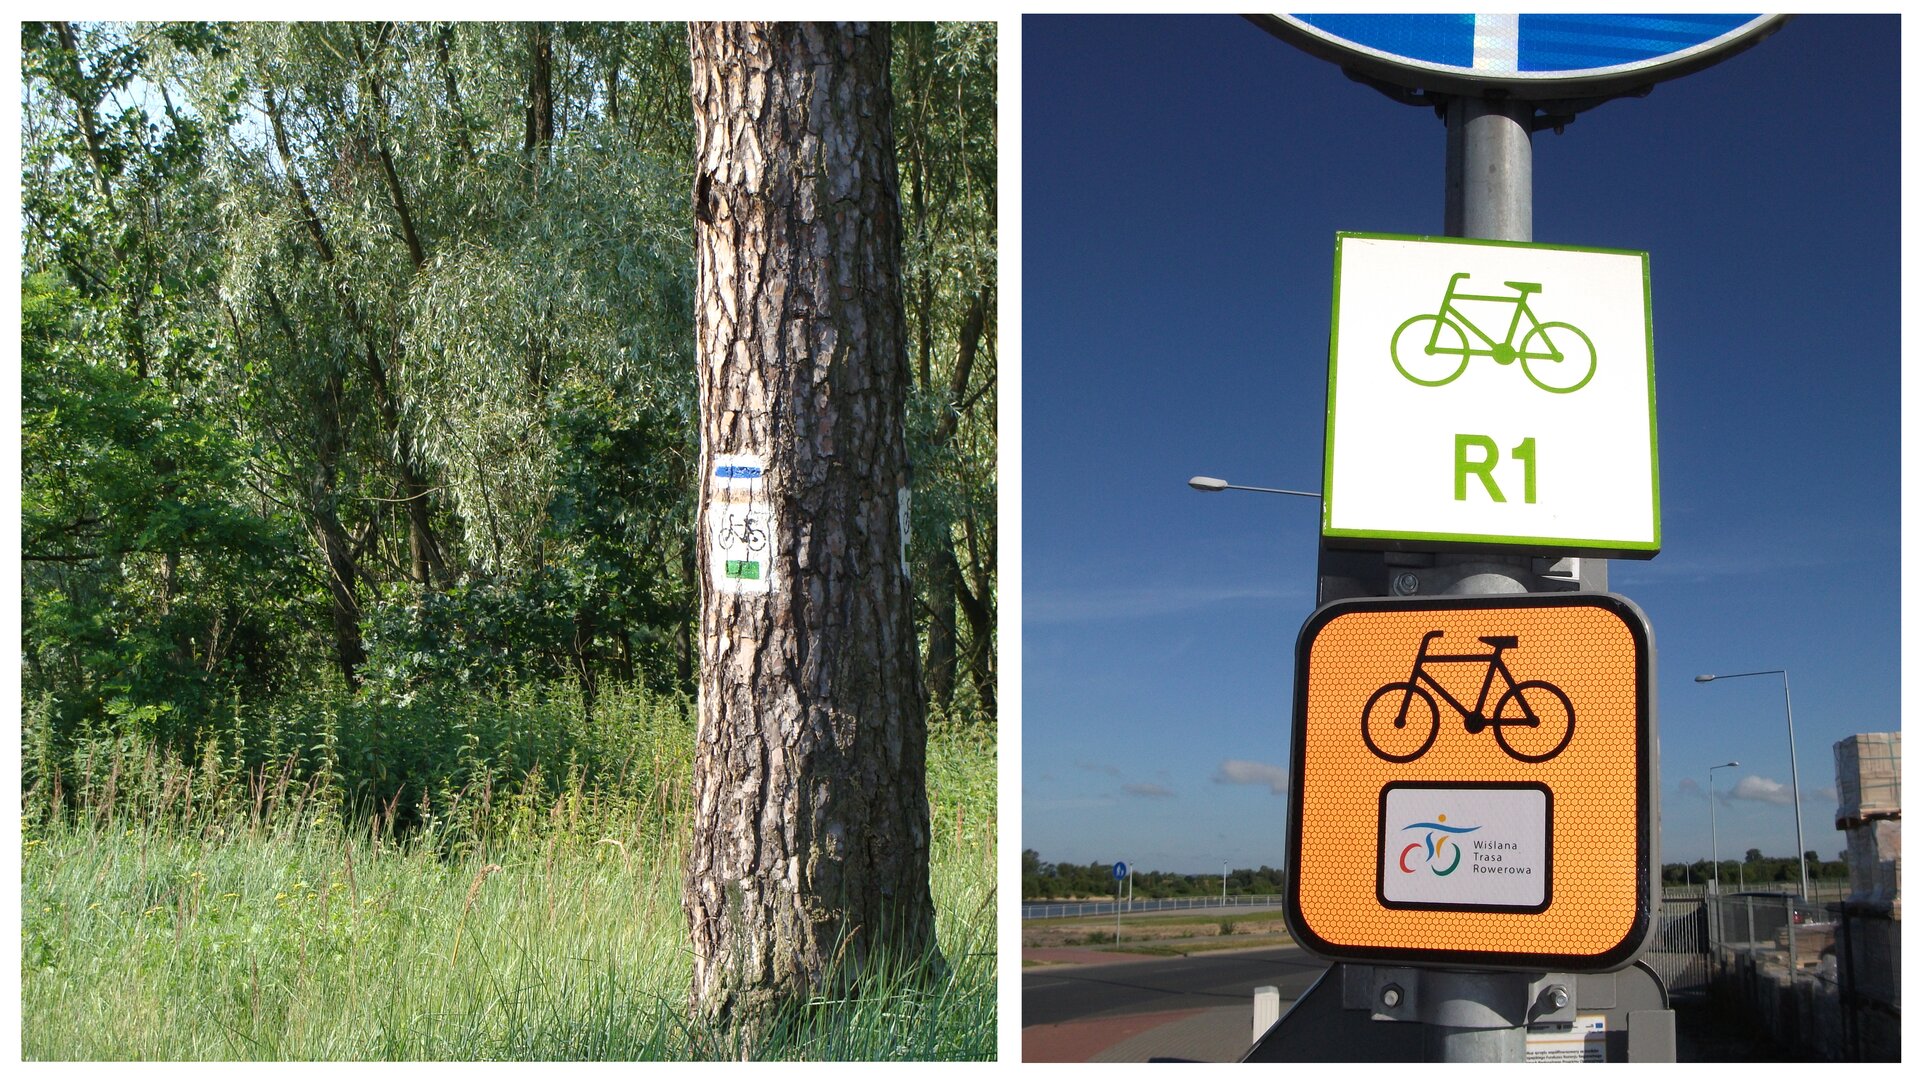 Fotografia z lewej przedstawia pień drzewa na tle lasu. Na pniu znajduje się biało – niebieski symbol szlaku turystycznego. Pod nim w białym kwadracie symbol roweru i zielony pasek. To oznakowanie trasy. Fotografia z prawej przedstawia dwie tabliczki z oznaczeniem tras rowerowych. Znajdują się na metalowym słupie znaku drogowego przy szosie. Górna, biała ma zielony symbol roweru i napis R1, czyli oznaczenie szlaku europejskiego. Dolna, pomarańczowa ma czarny symbol roweru i kolorowy znaczek na białym tle. To oznakowanie trasy regionalnej.